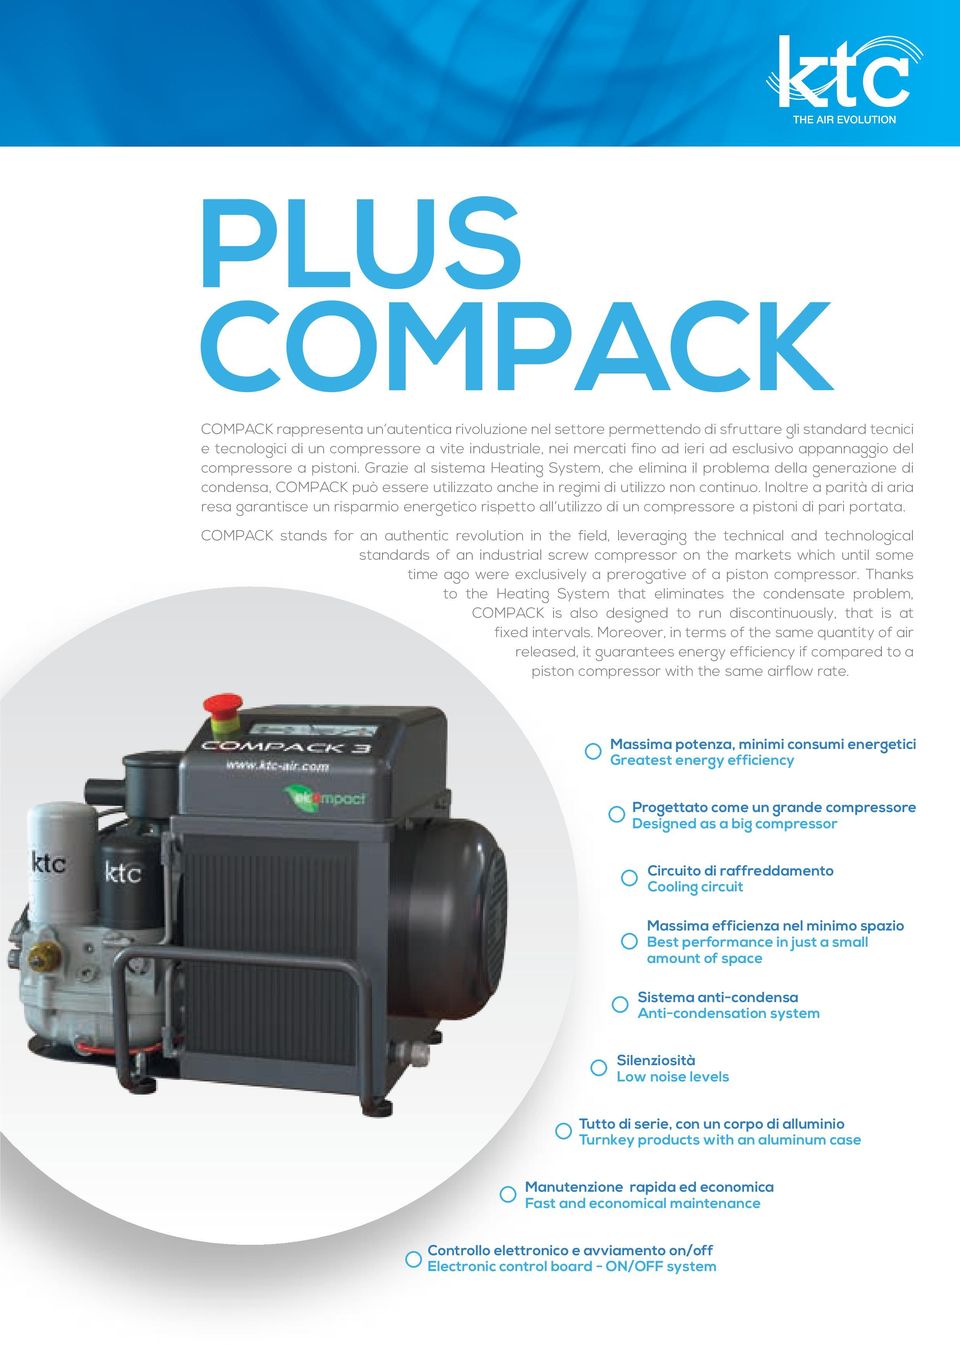 Grazie al sistema Heating System, che elimina il problema della generazione di condensa, COMPACK può essere utilizzato anche in regimi di utilizzo non continuo.